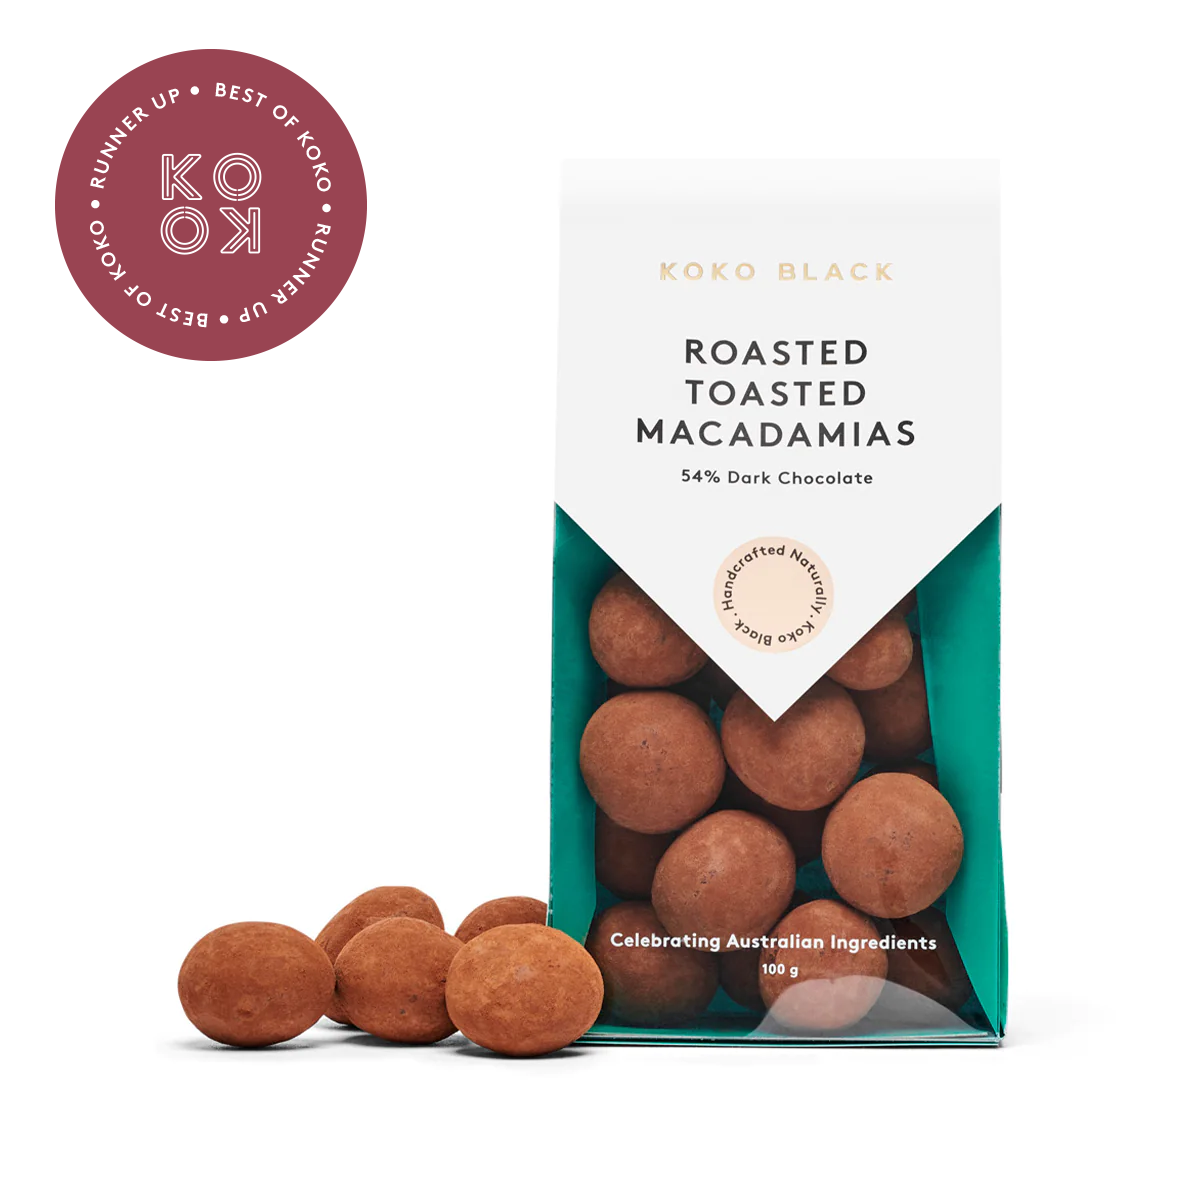 Roasted Toasted Macadamias | Dark Chocolate